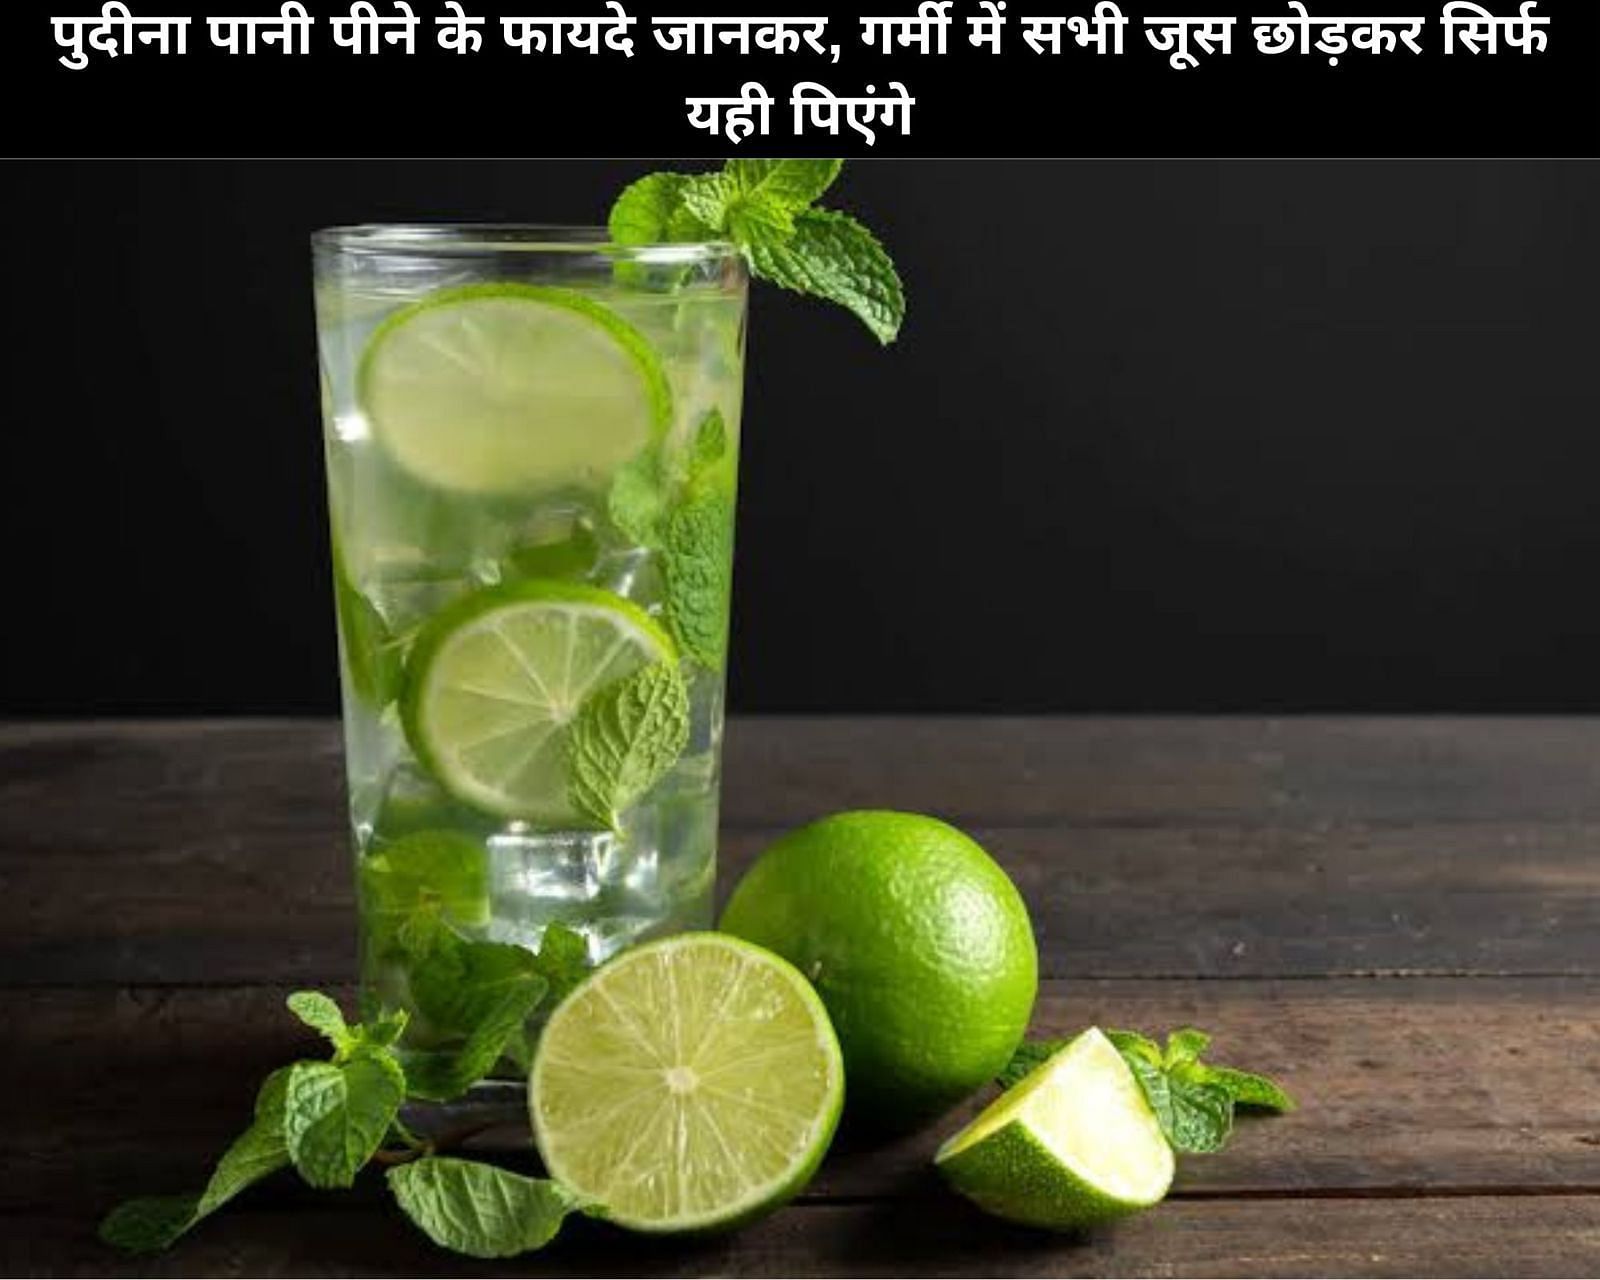 पुदीना पानी पीने के फायदे जानकर, गर्मी में सभी जूस छोड़कर सिर्फ यही पिएंगे (sportskeeda Hindi) 